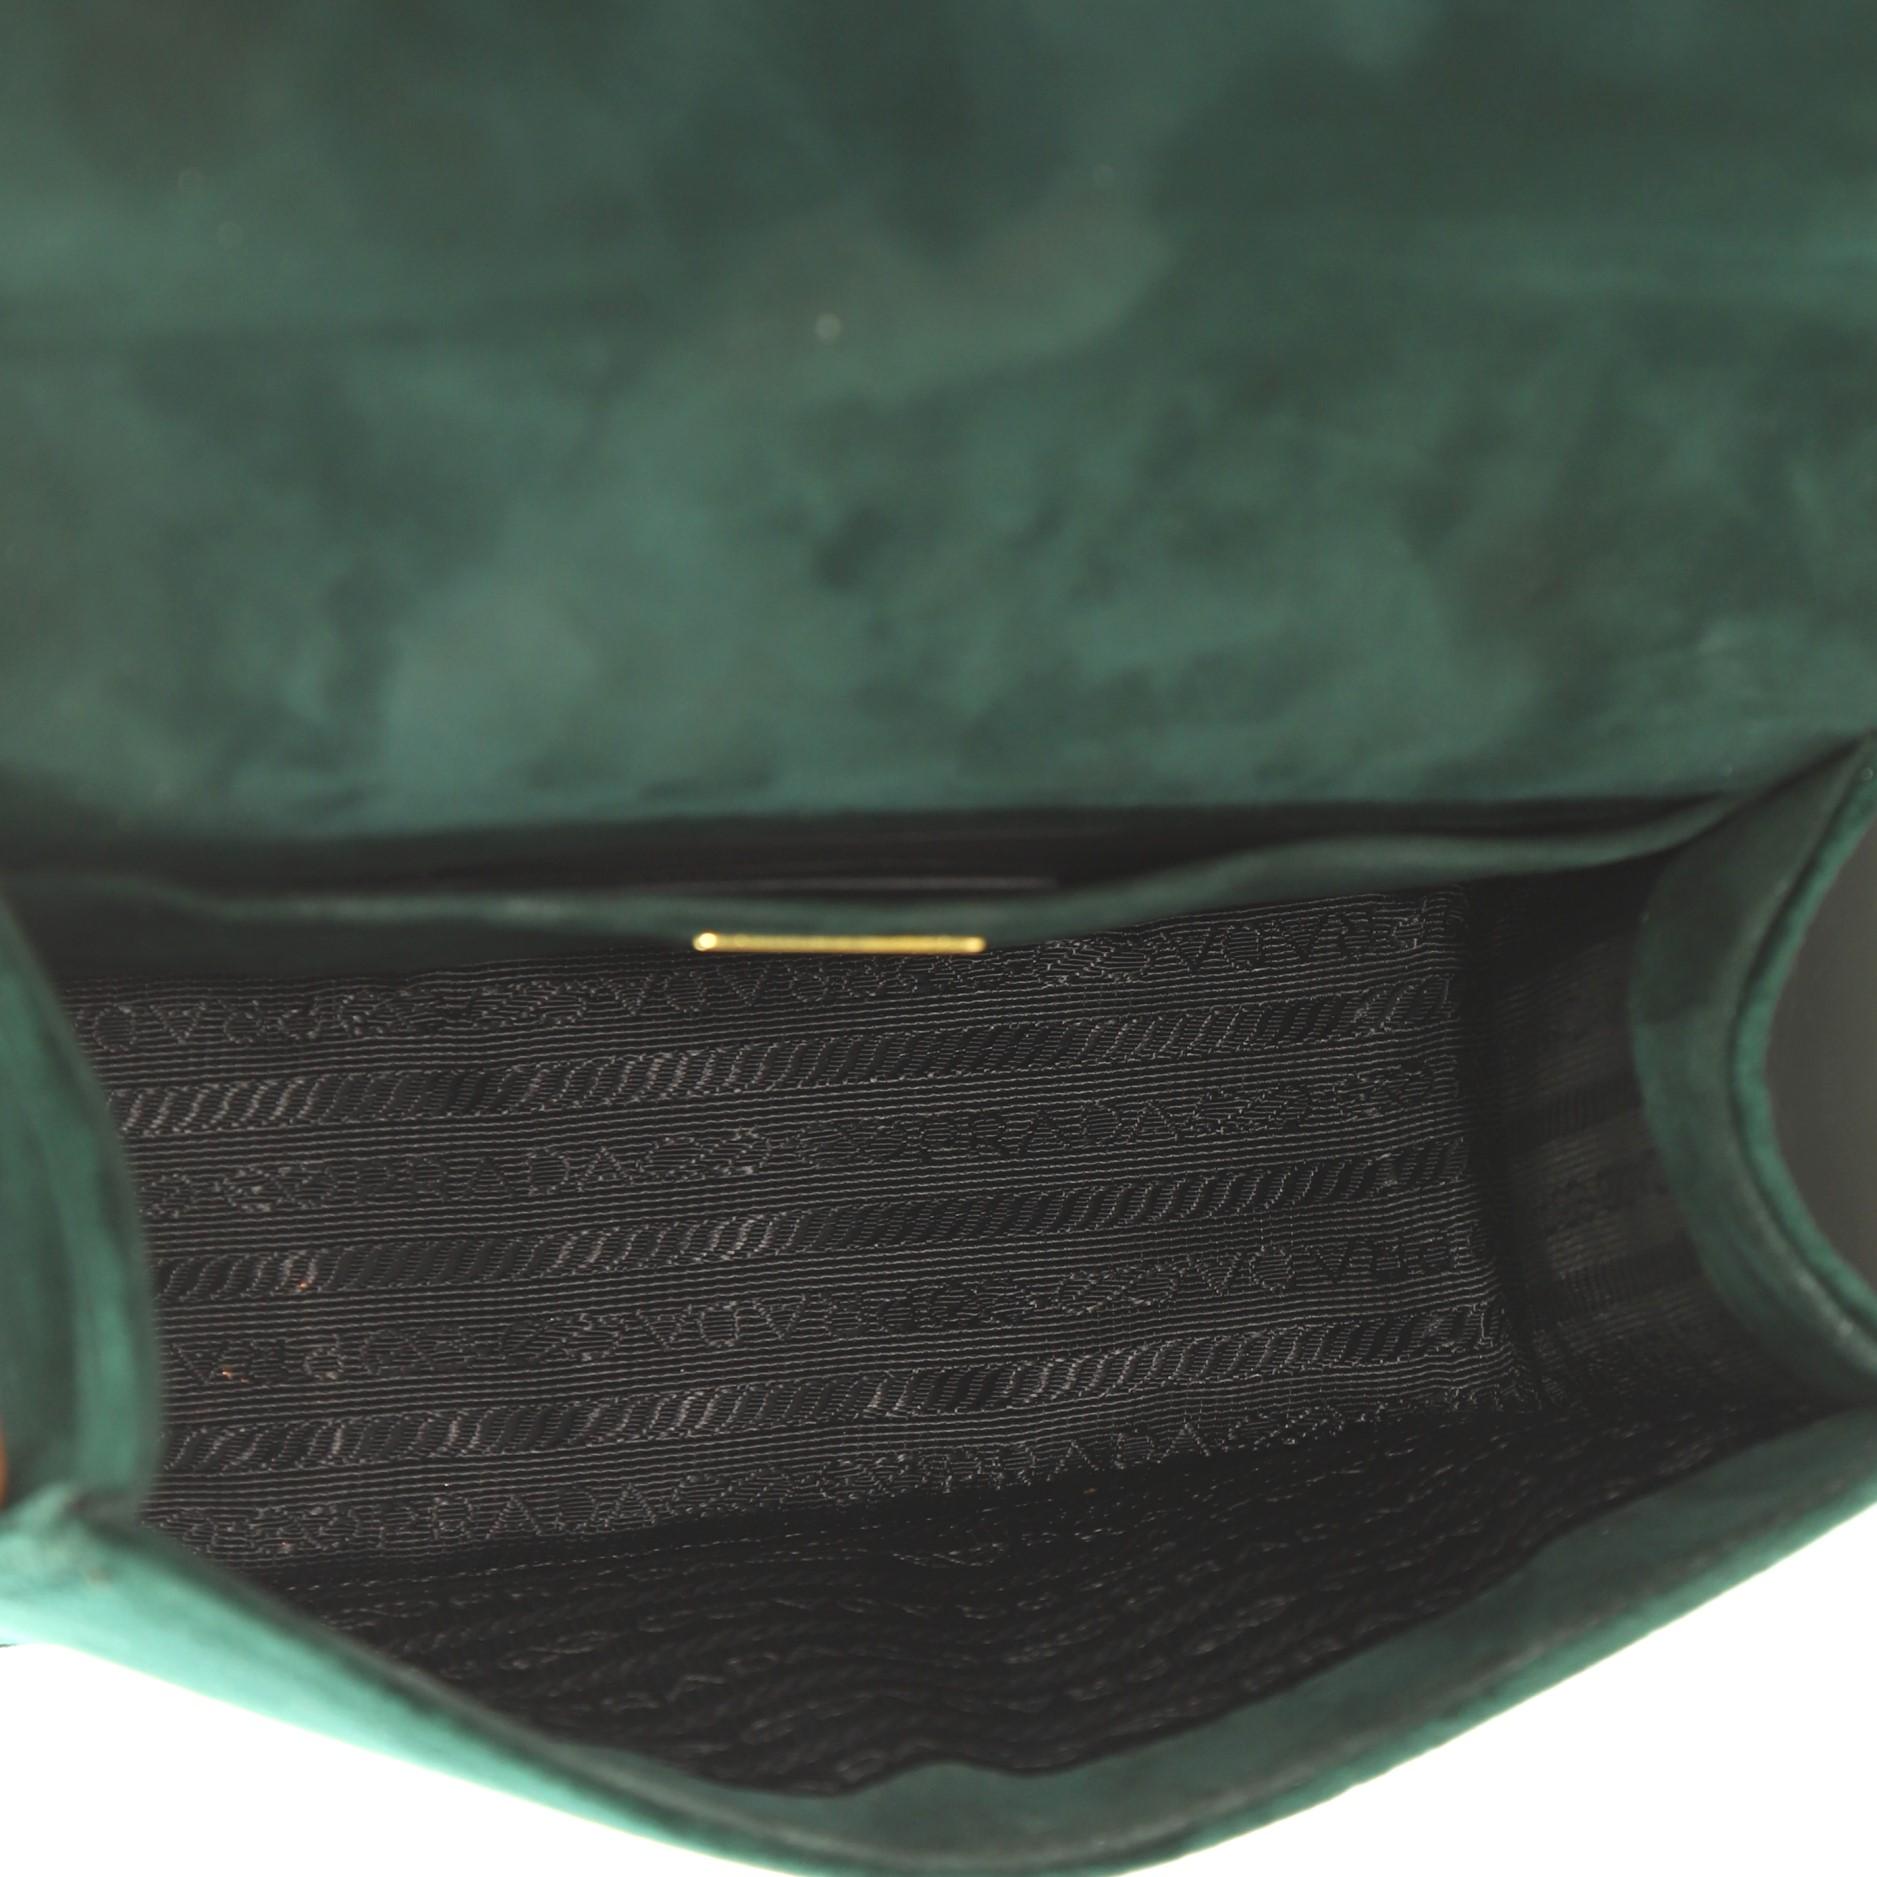 Black Prada Cahier Shoulder Bag Velvet Small